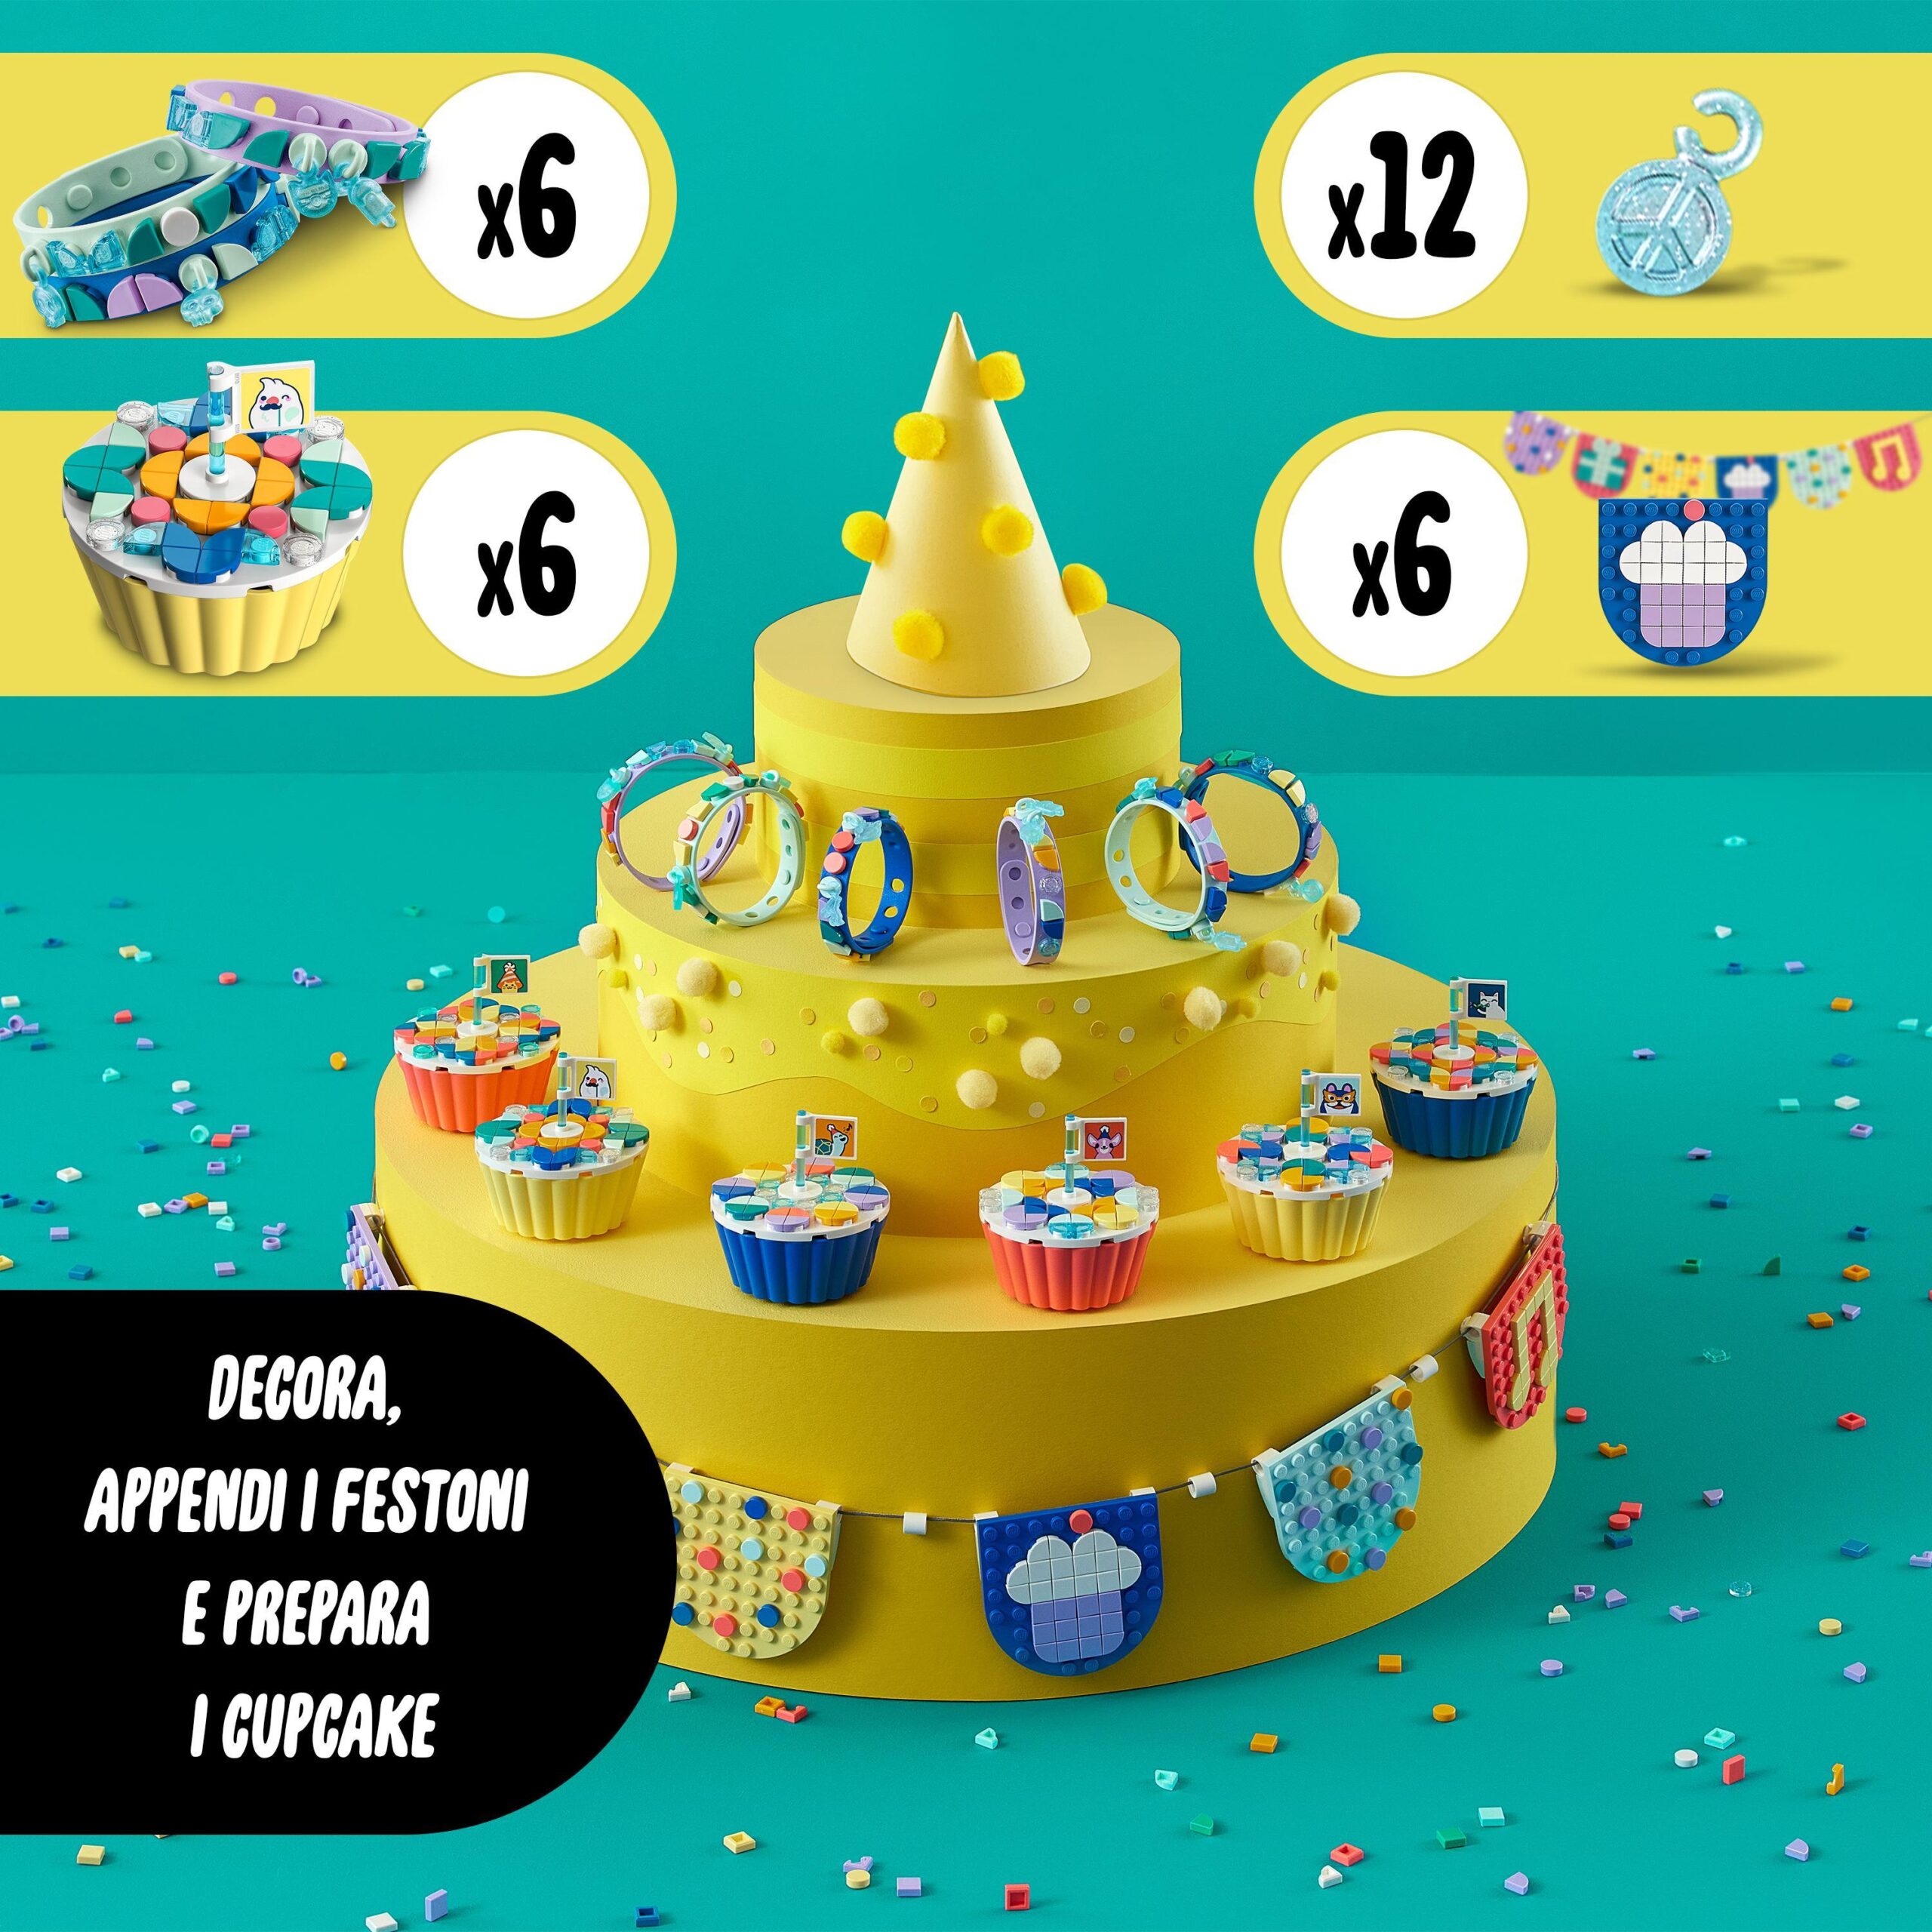 Lego dots 41806 grande kit per le feste, giochi festa compleanno bambini  fai da te con cupcake, braccialetti e festoni - Toys Center